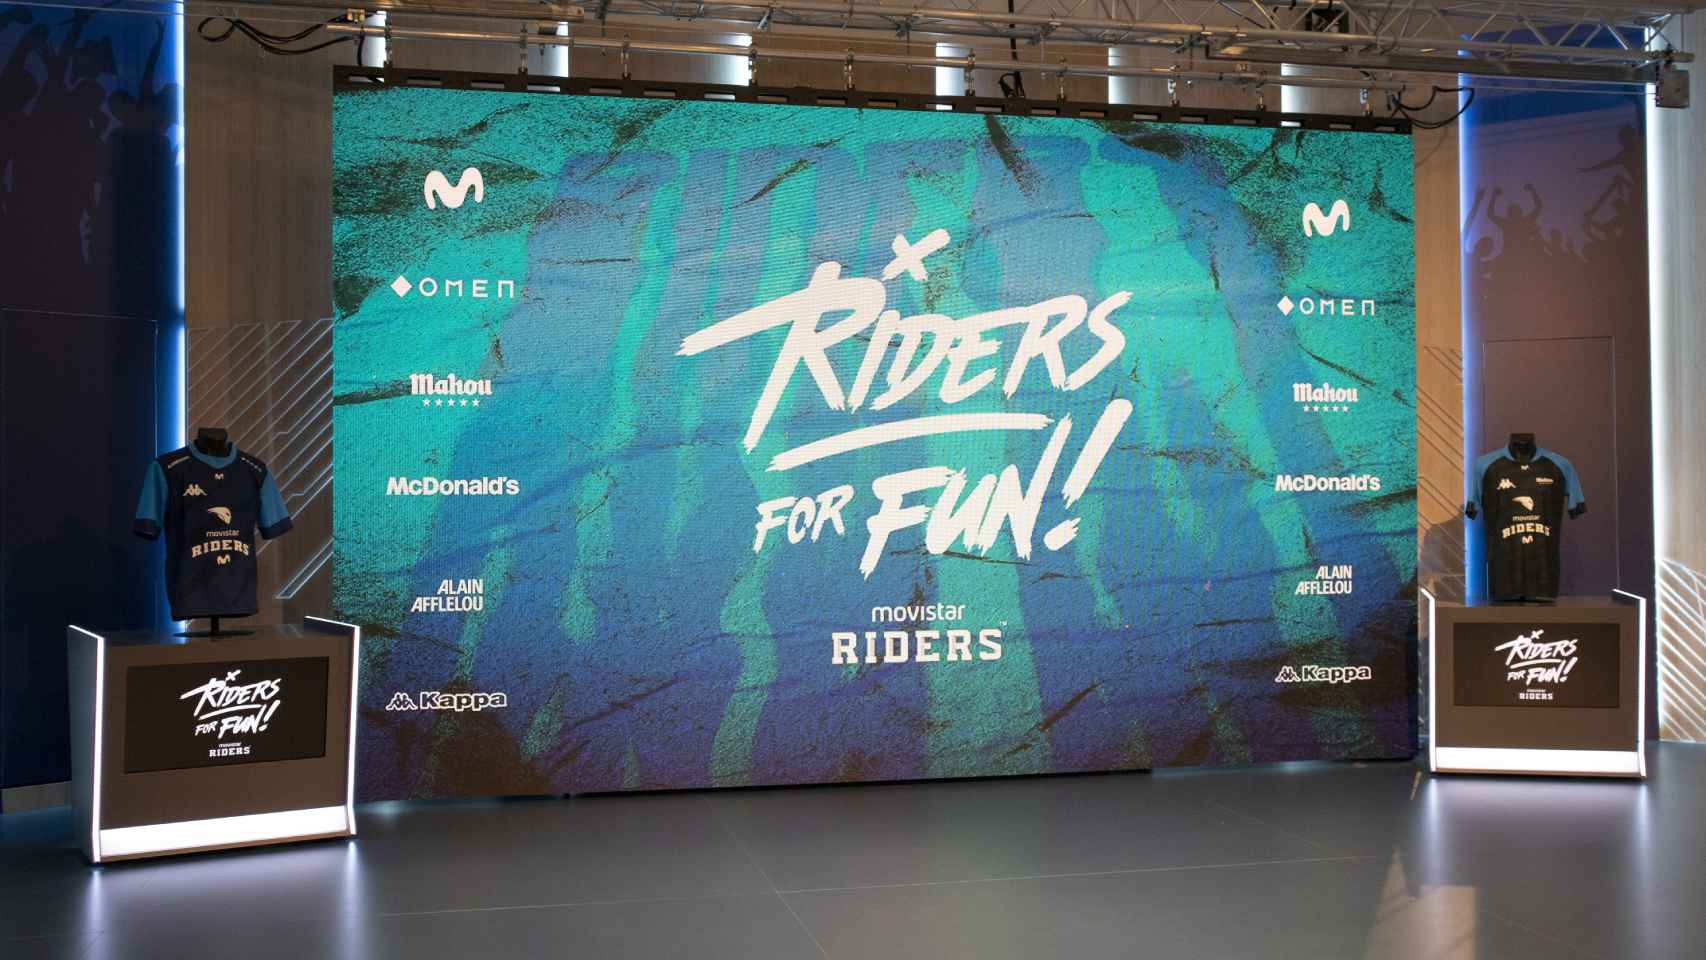 Presentación de 'Riders for fun', el nuevo proyecto del club.